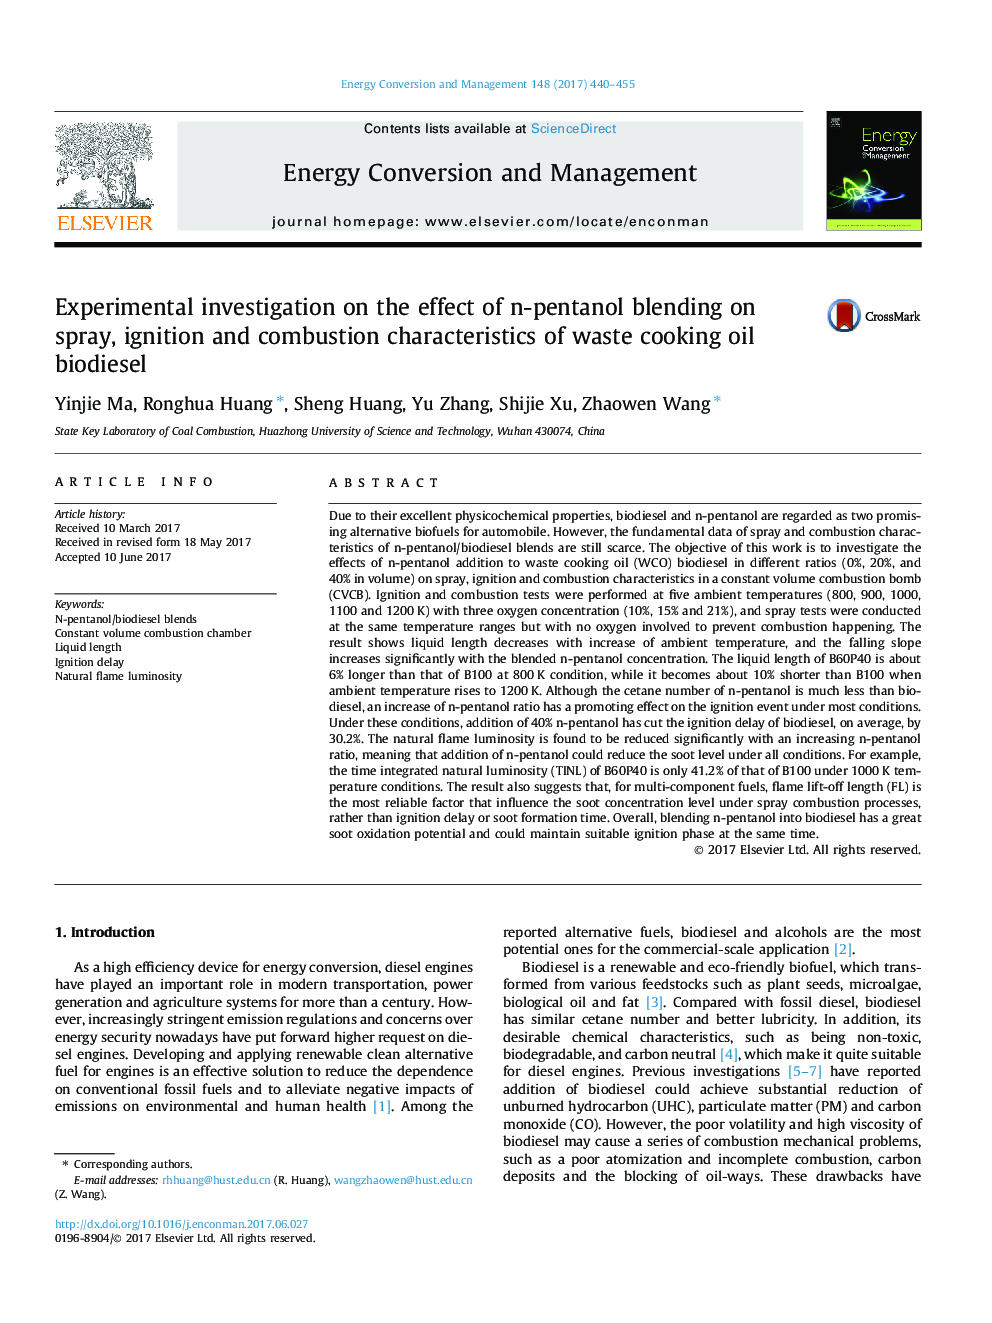 بررسی تجربی اثر ترکیب نانولوله پنتانول بر ویژگی های اسپری، احتراق و احتراق سوخت های زیستی روغن زیتون 